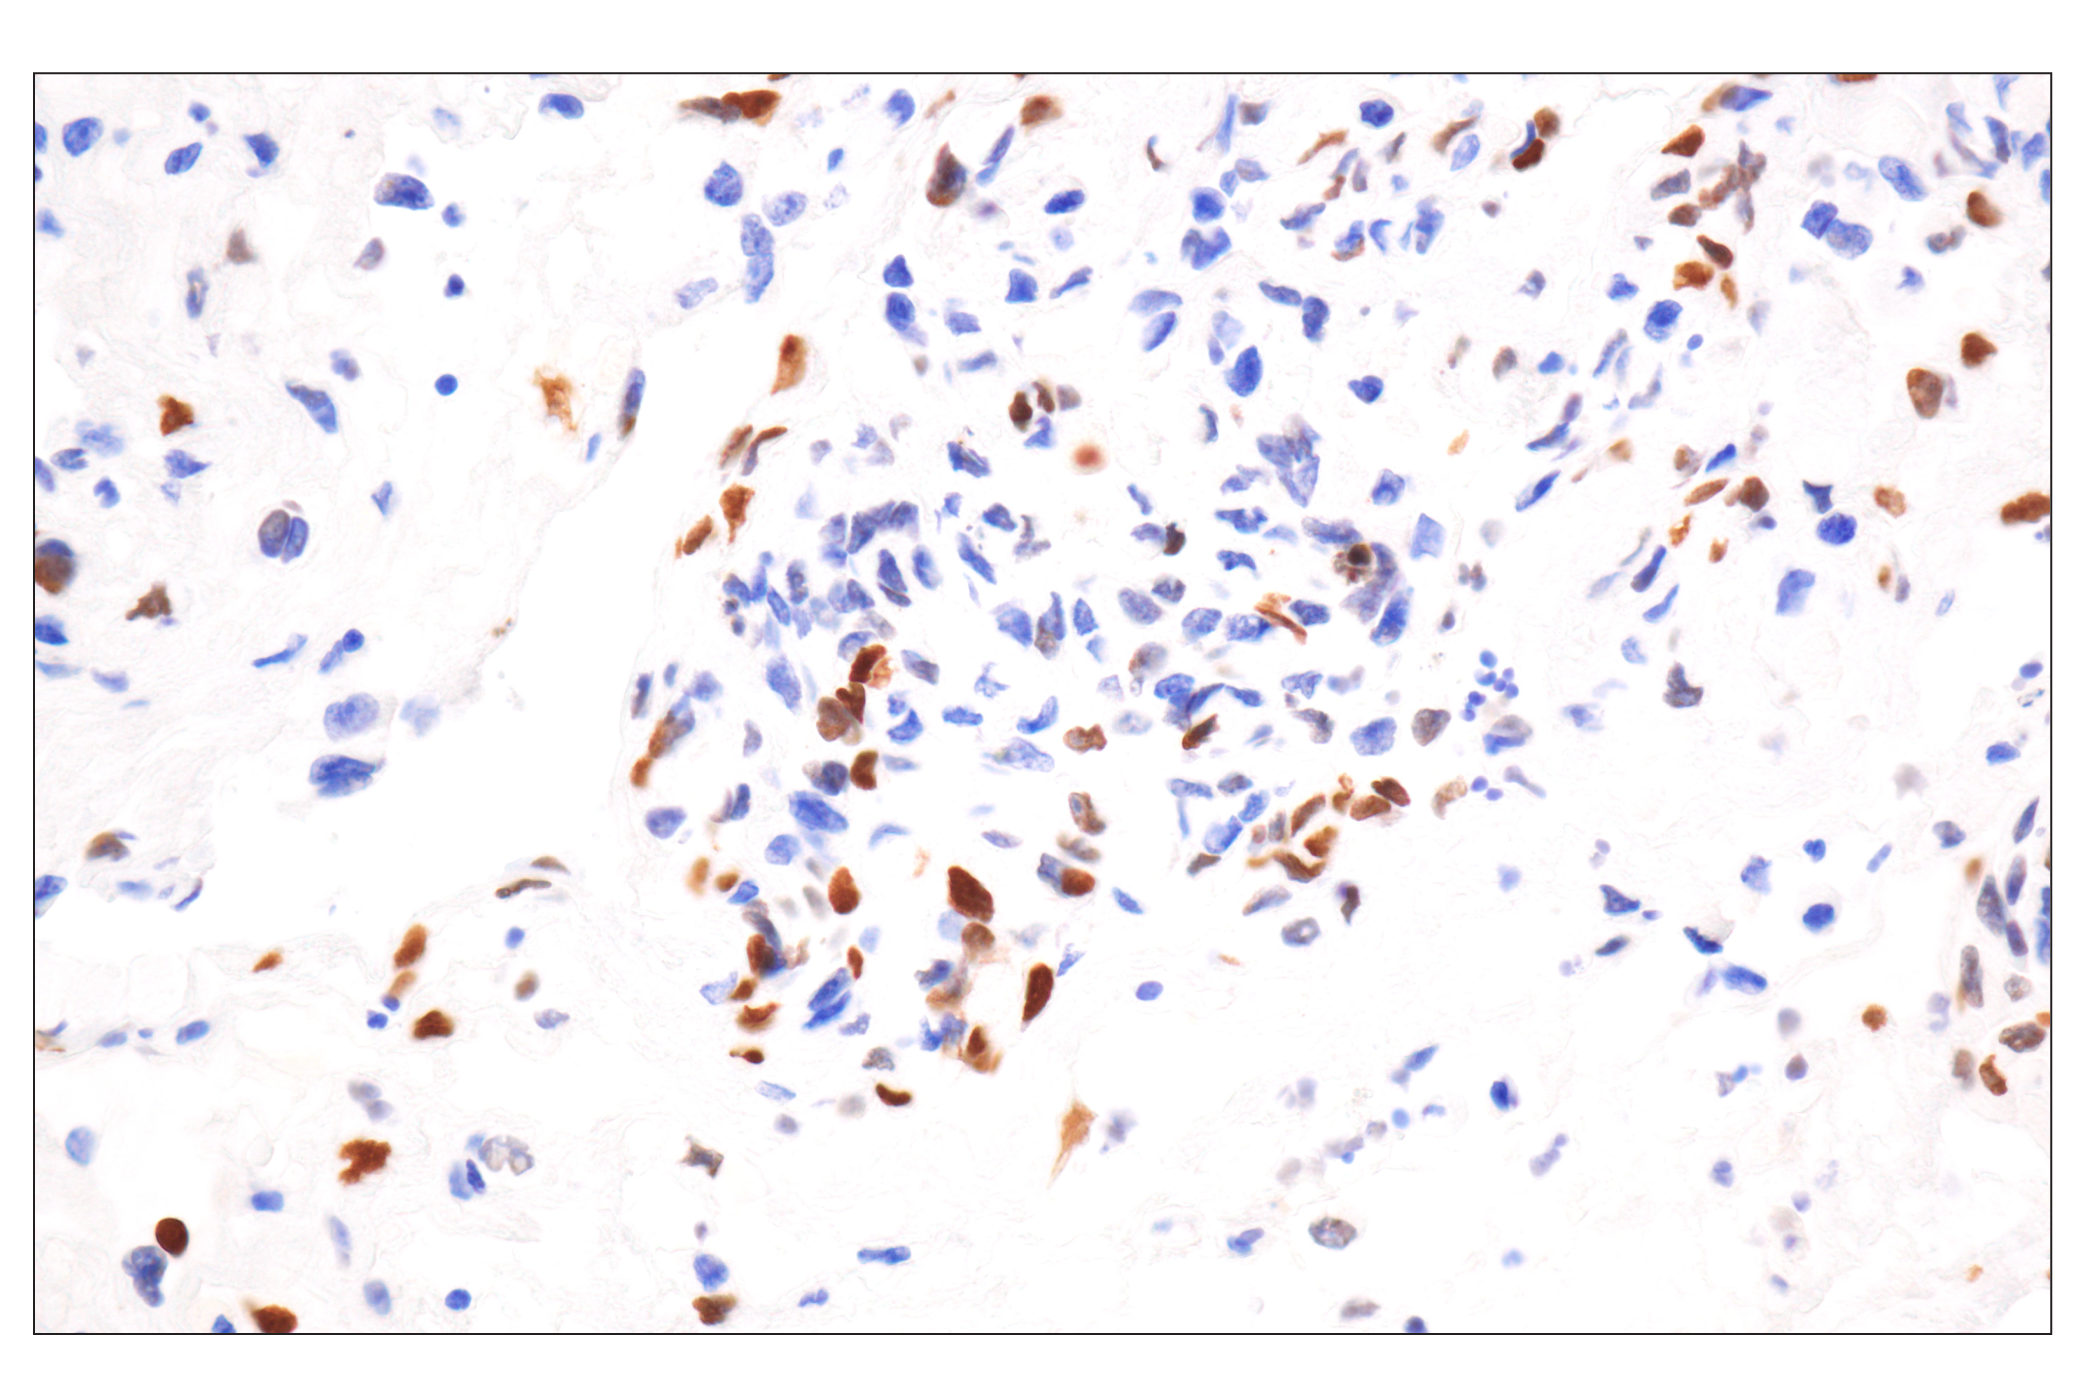  Image 11: UV Induced DNA Damage Response Antibody Sampler Kit